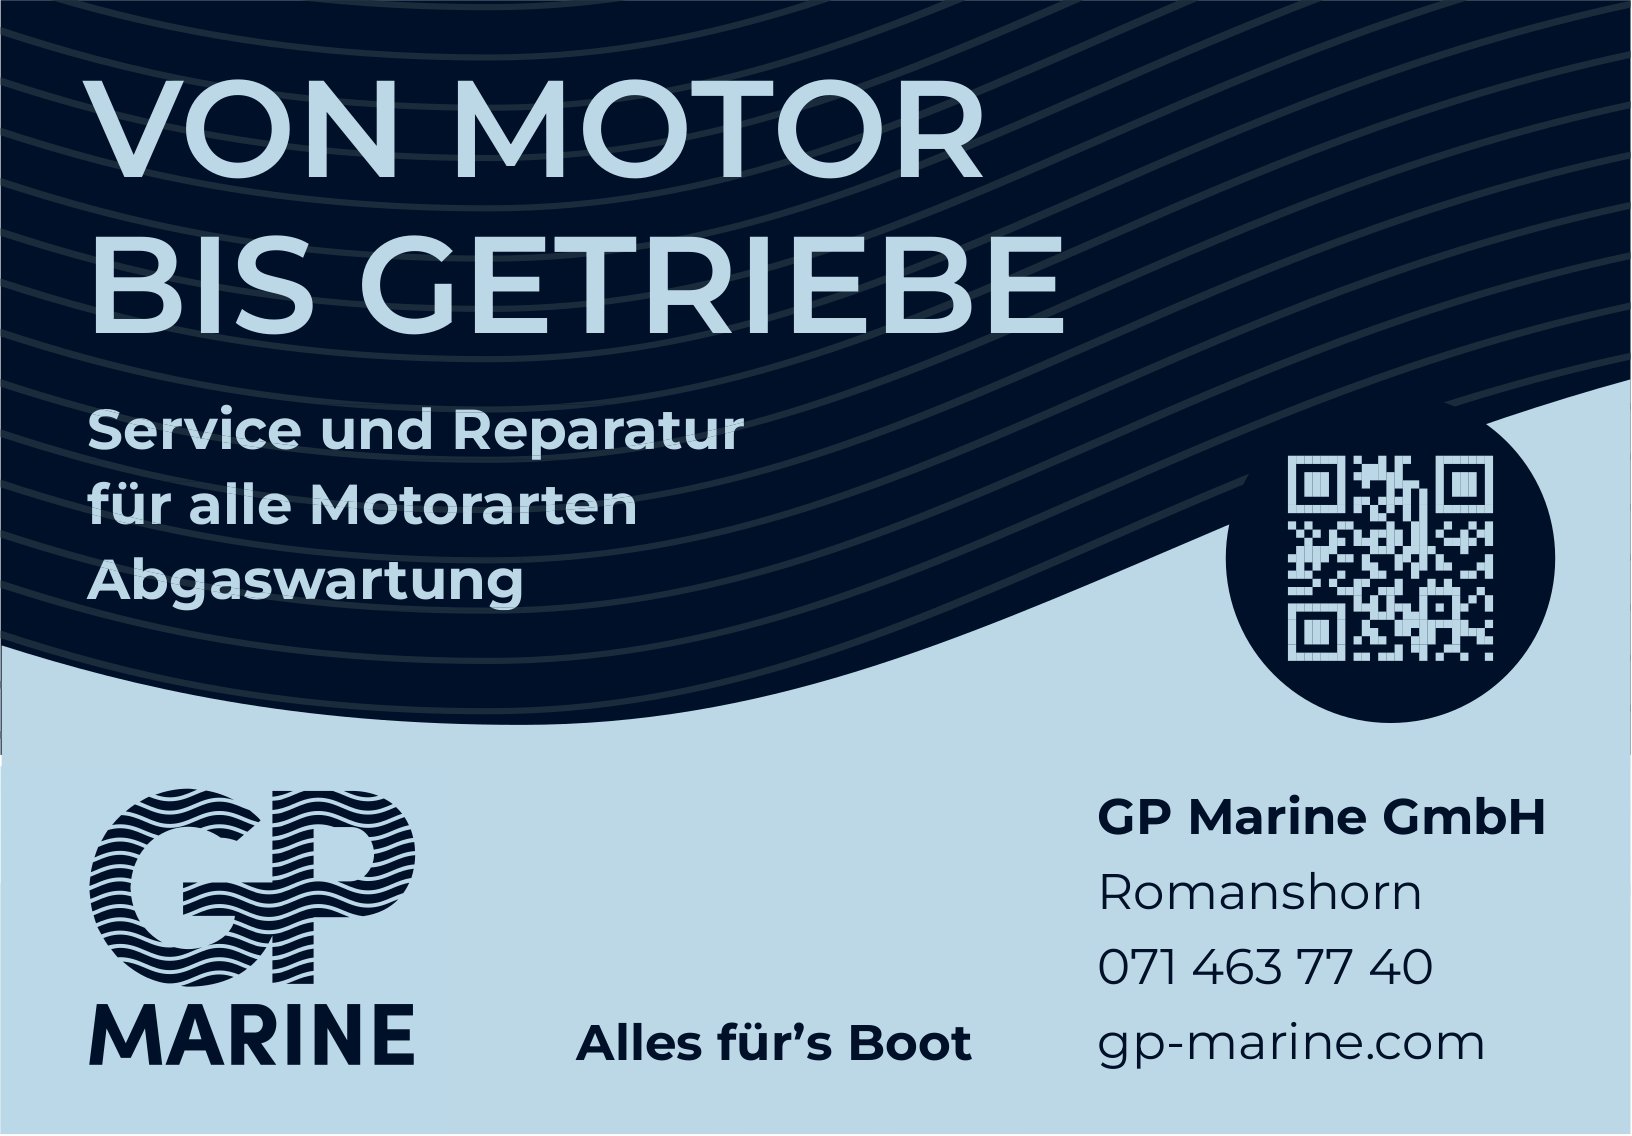 GP Marine GmbH, Romanshorn - Service und Reparatur